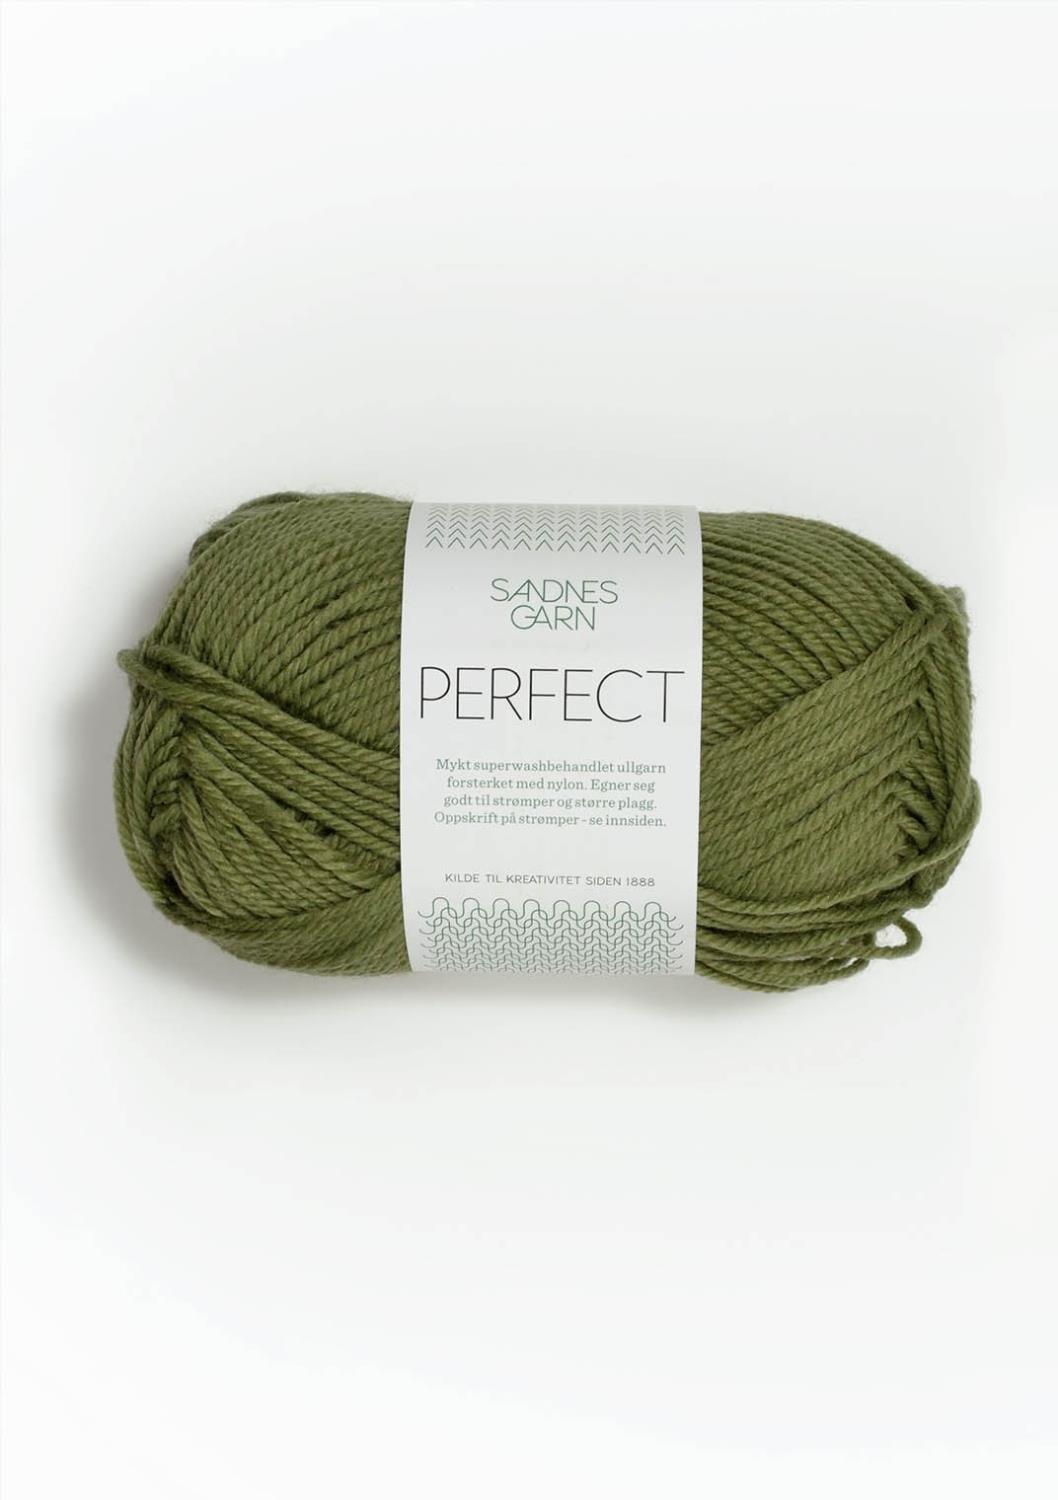 Perfect Sandnes 9542 - Olivengrønn